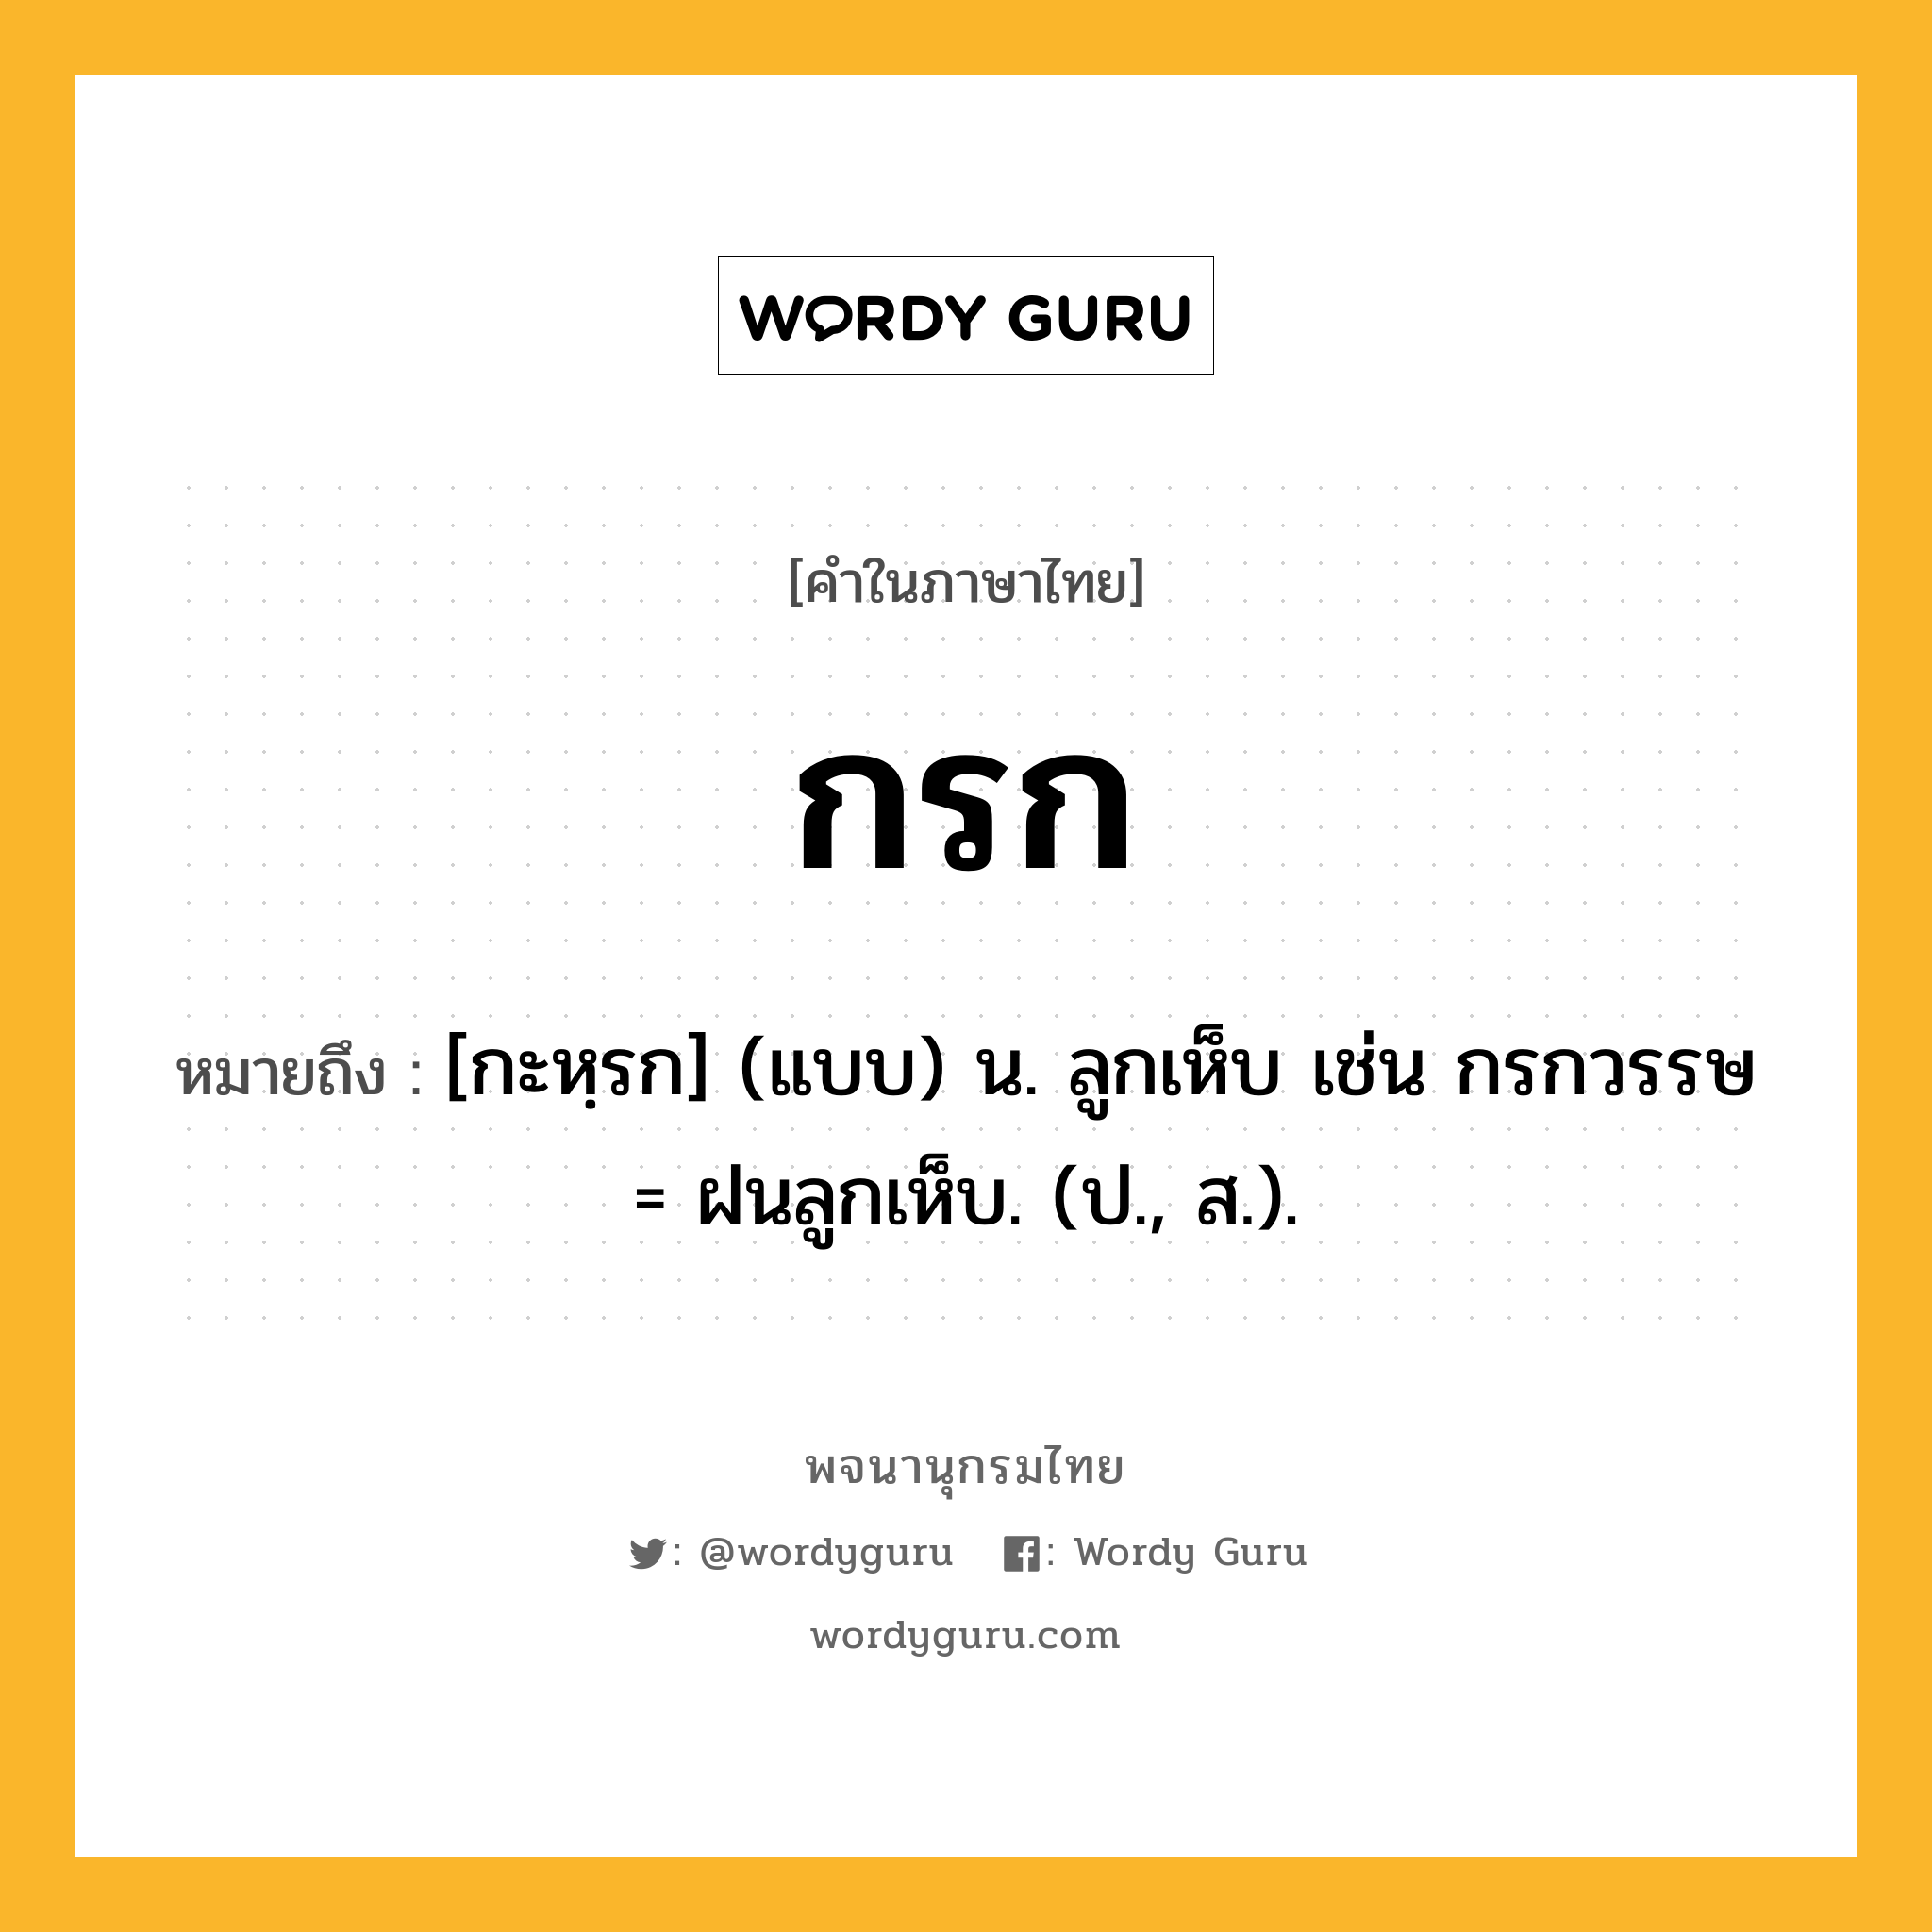 กรก ความหมาย หมายถึงอะไร?, คำในภาษาไทย กรก หมายถึง [กะหฺรก] (แบบ) น. ลูกเห็บ เช่น กรกวรรษ = ฝนลูกเห็บ. (ป., ส.).